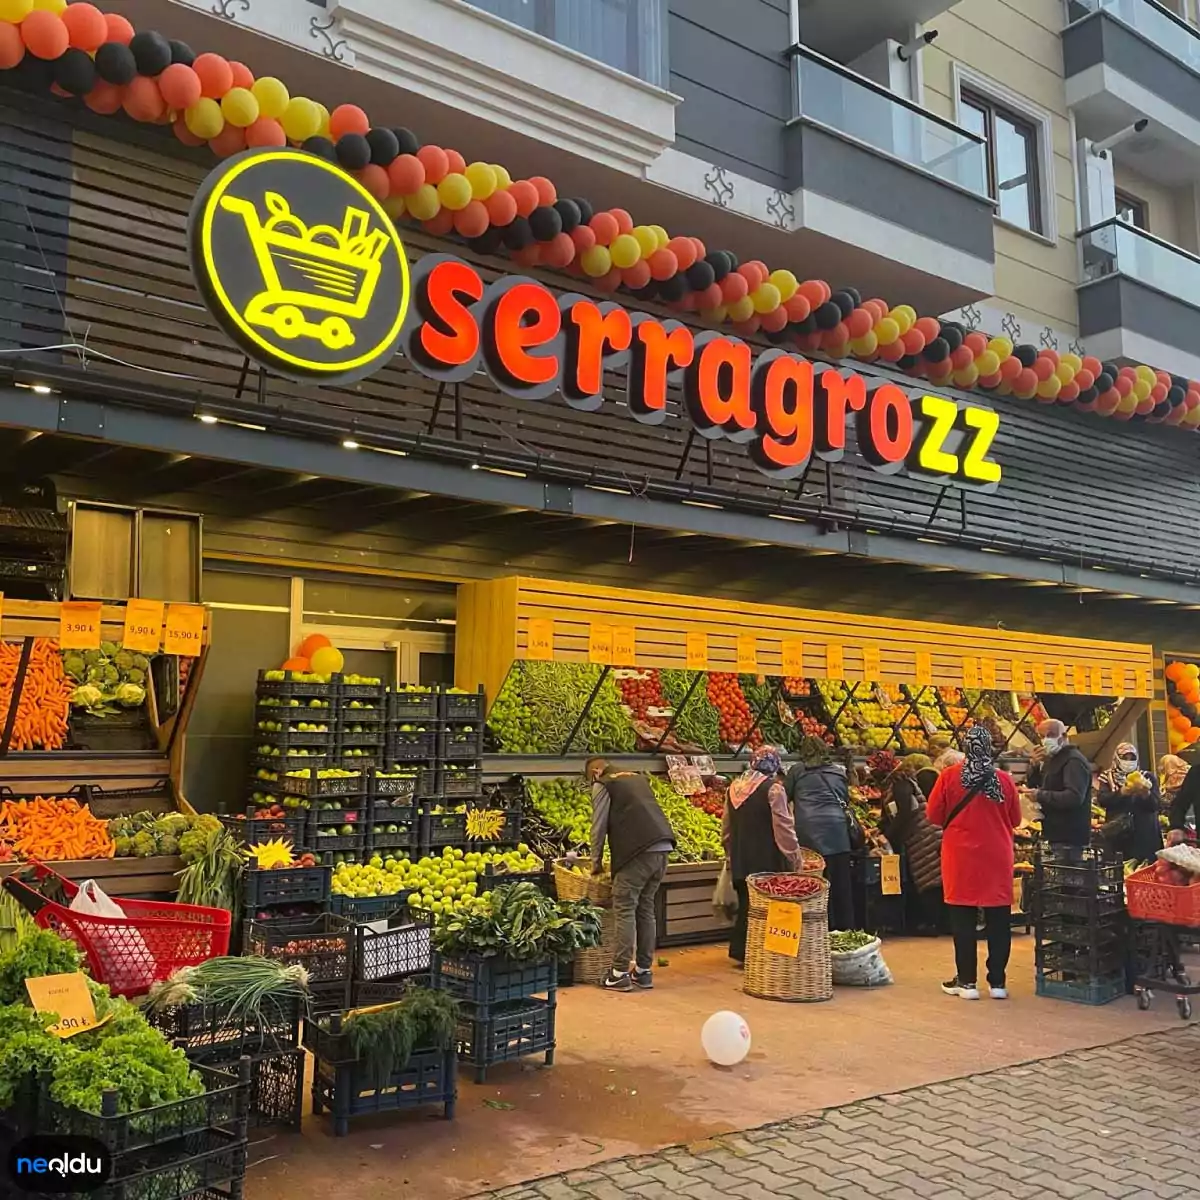 serragrozz-market.webp